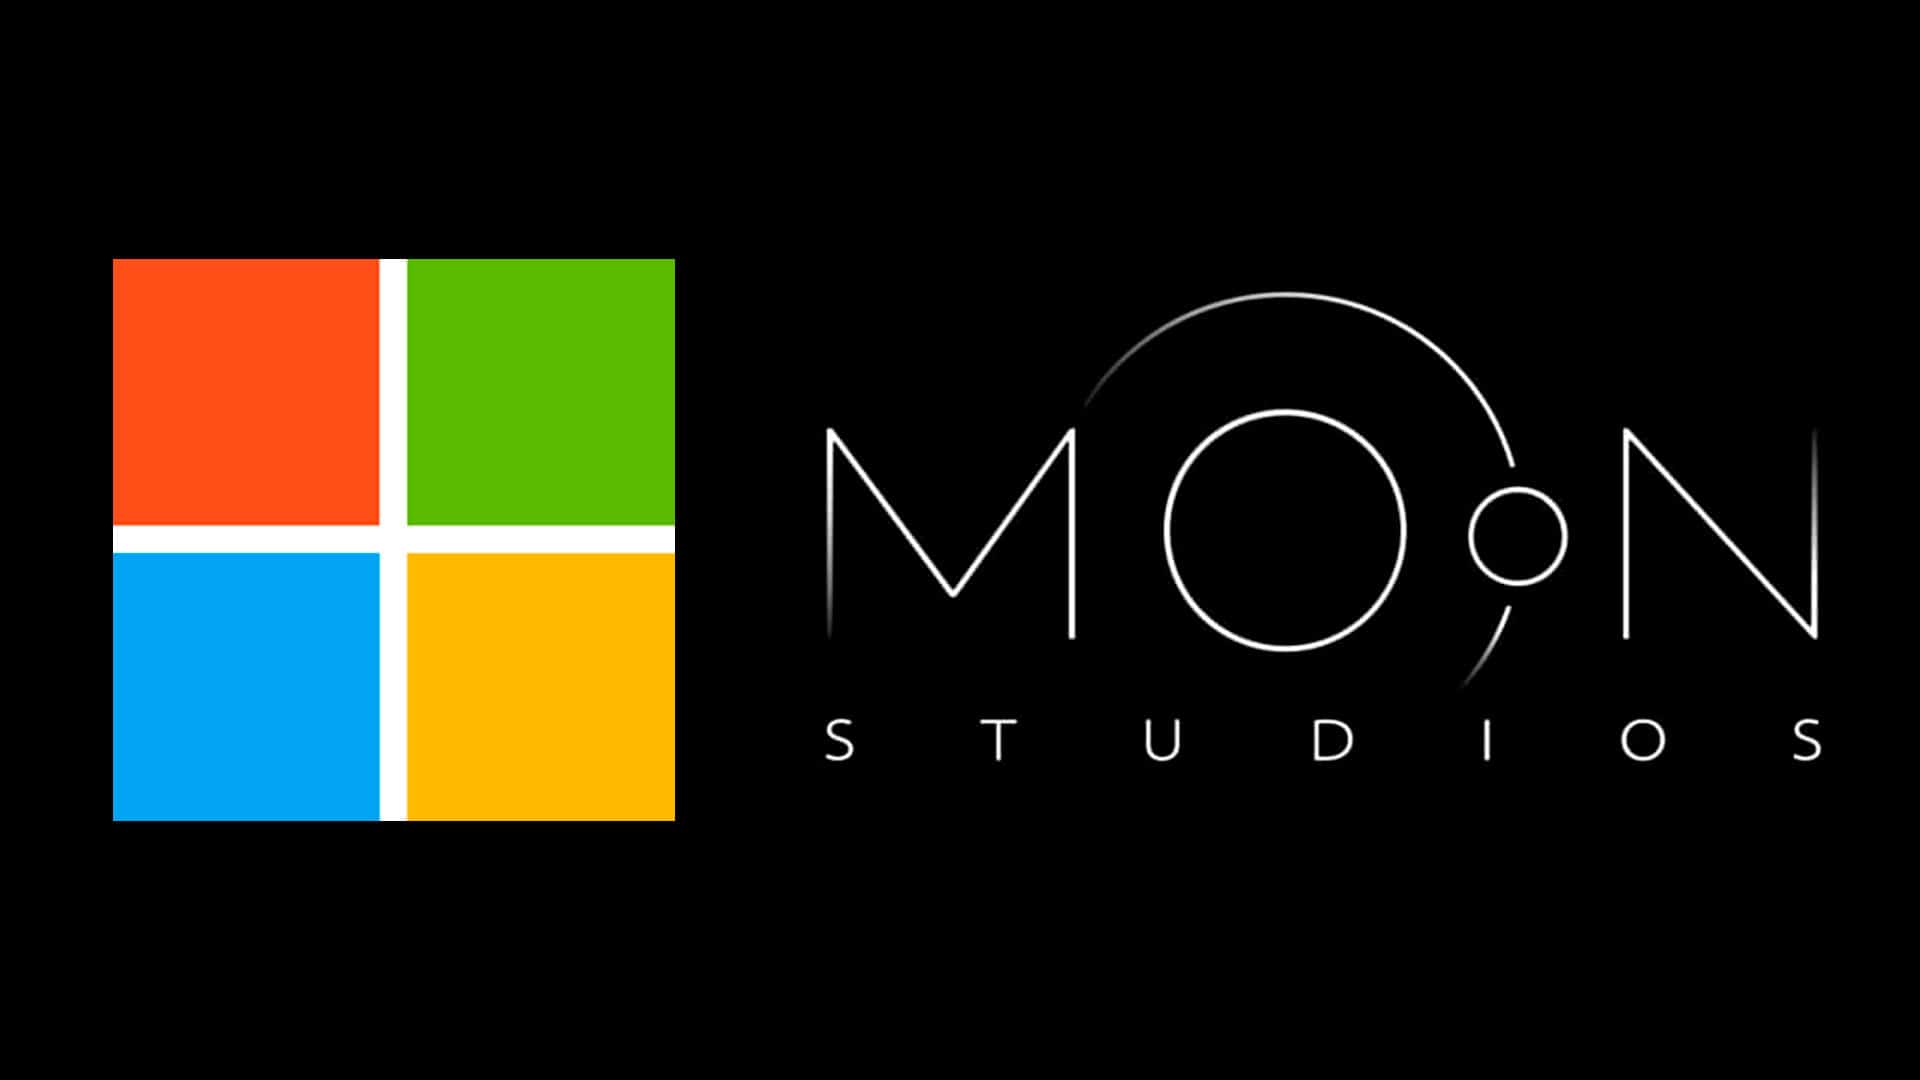 Microsoft rechazó el nuevo proyecto de Moon Studios por la toxicidad dentro de la empresa